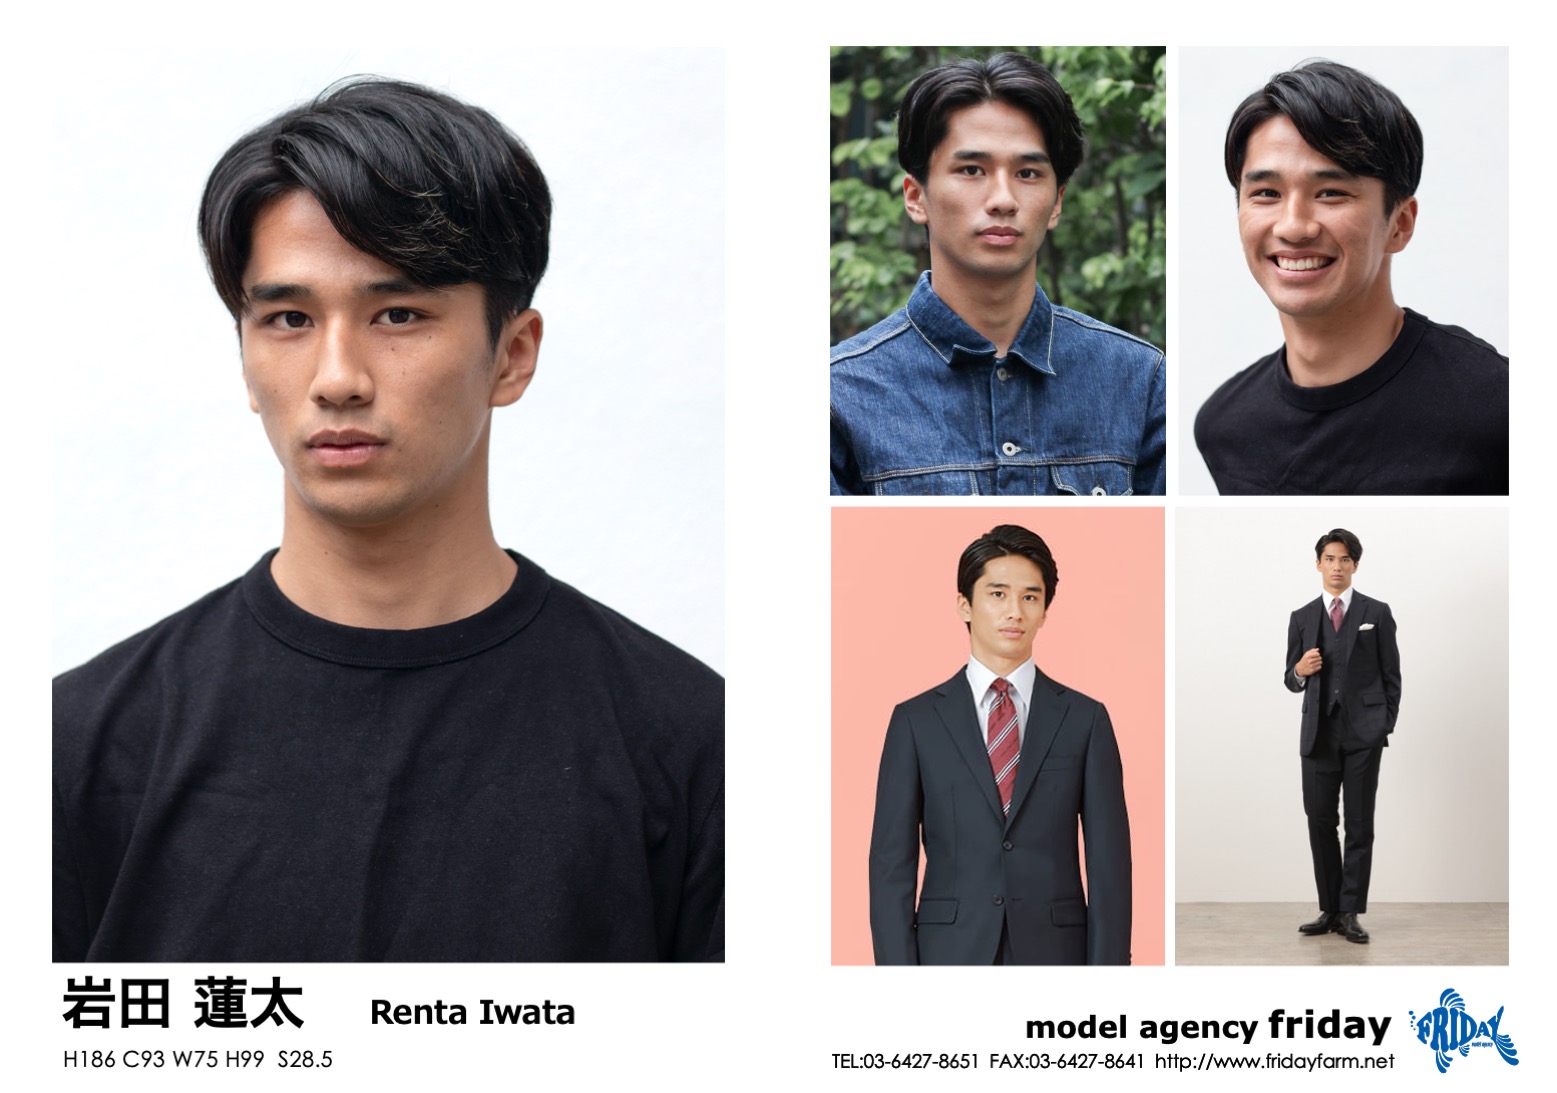 岩田 蓮太 - Renta Iwata | model agency friday